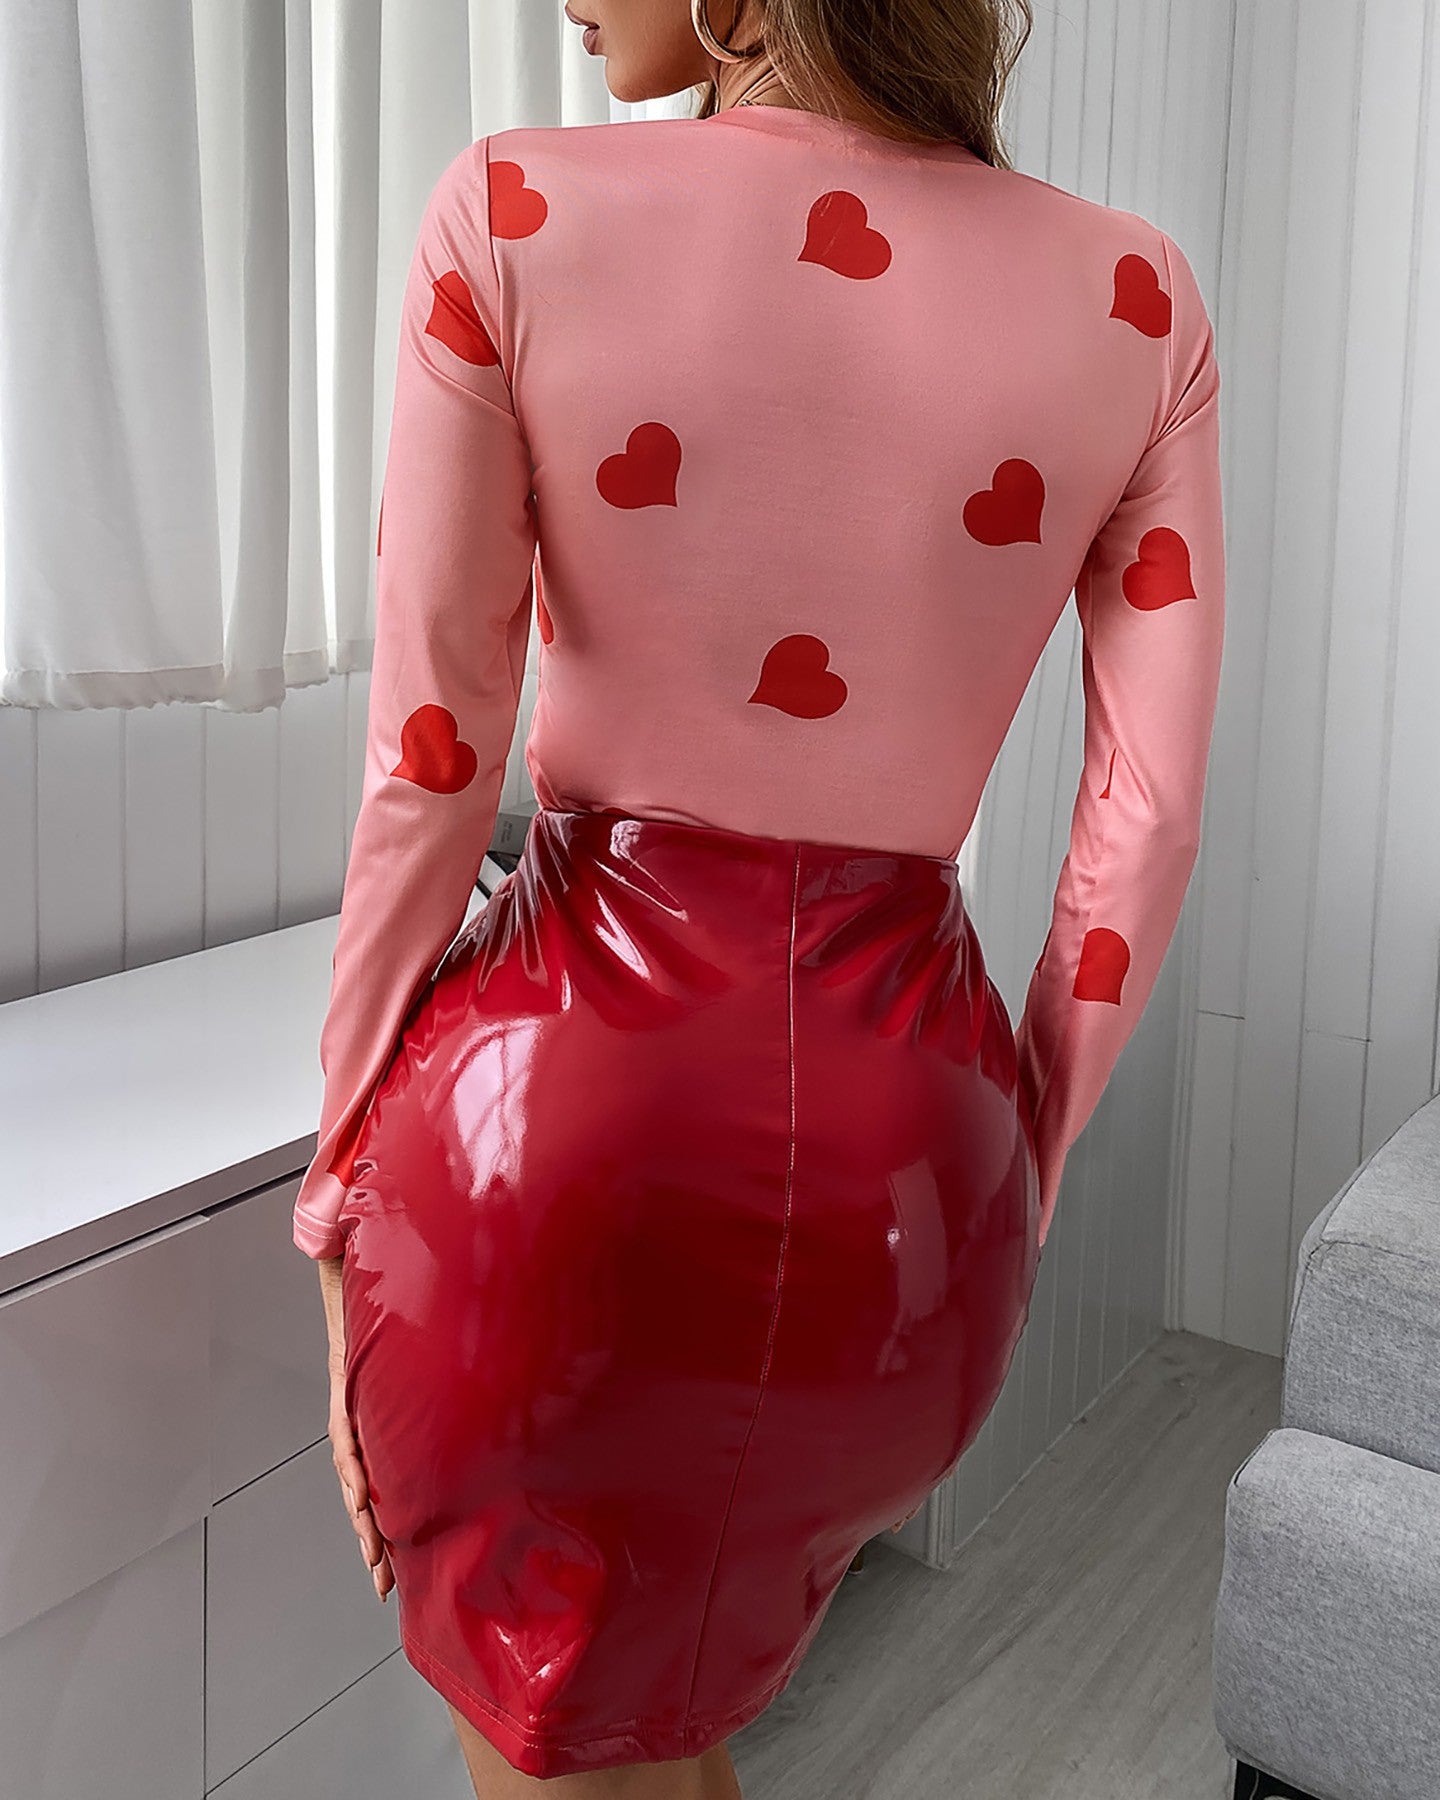 Heart Print Long Sleeve Top & Skirt Set